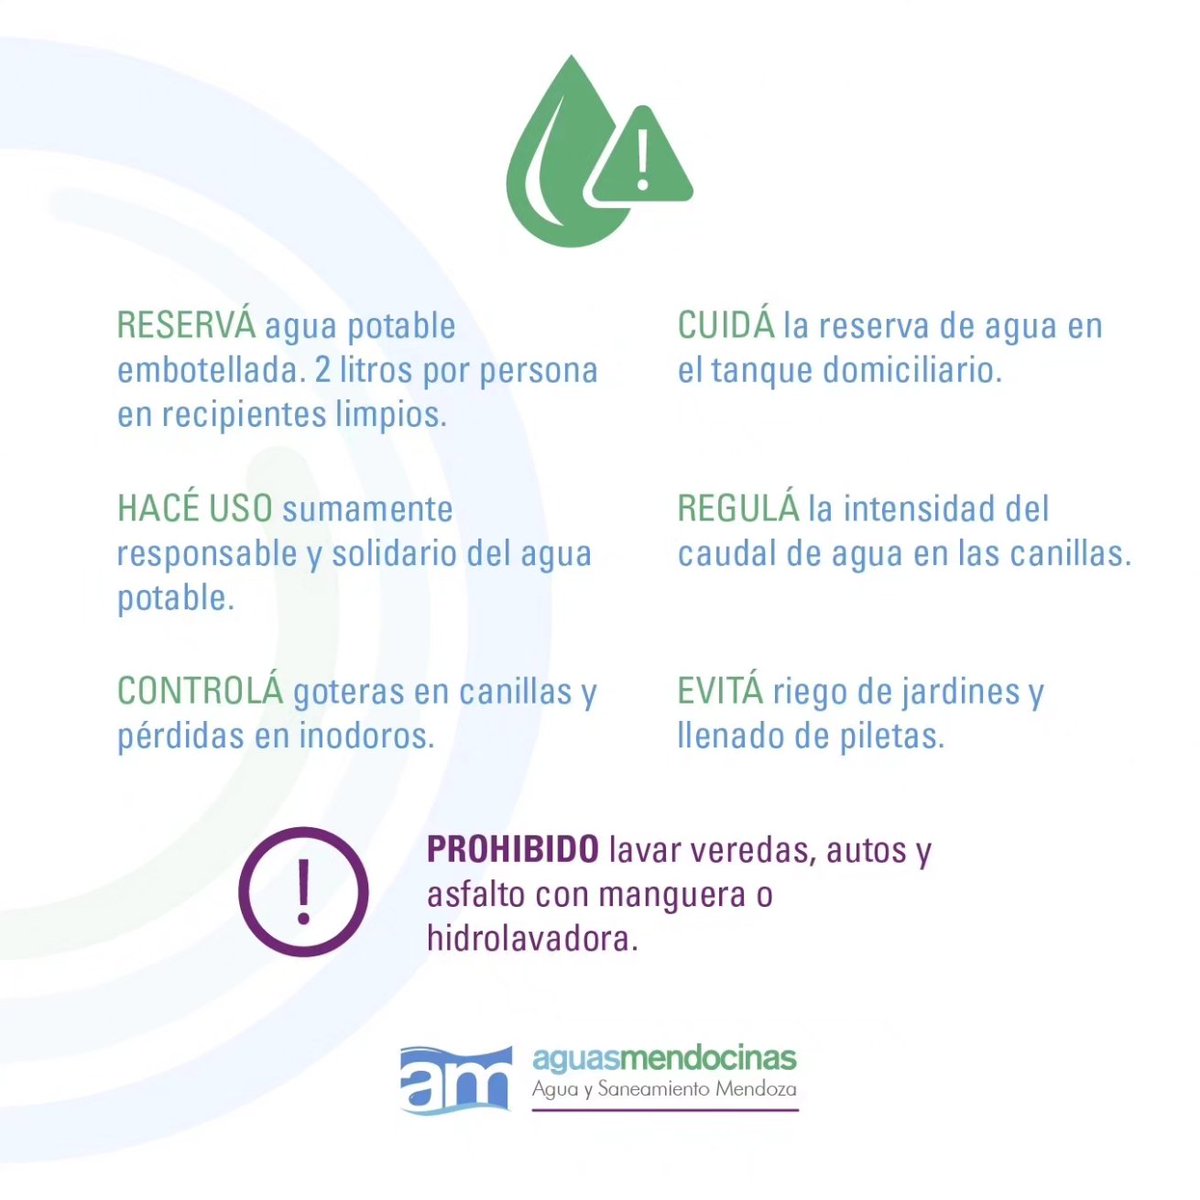 💧Hacé uso responsable y solidario del agua potable las 24 hs, durante todo el año. 🌡En función de las #AltasTemperaturas pronosticadas dejamos algunas recomendaciones. 👇